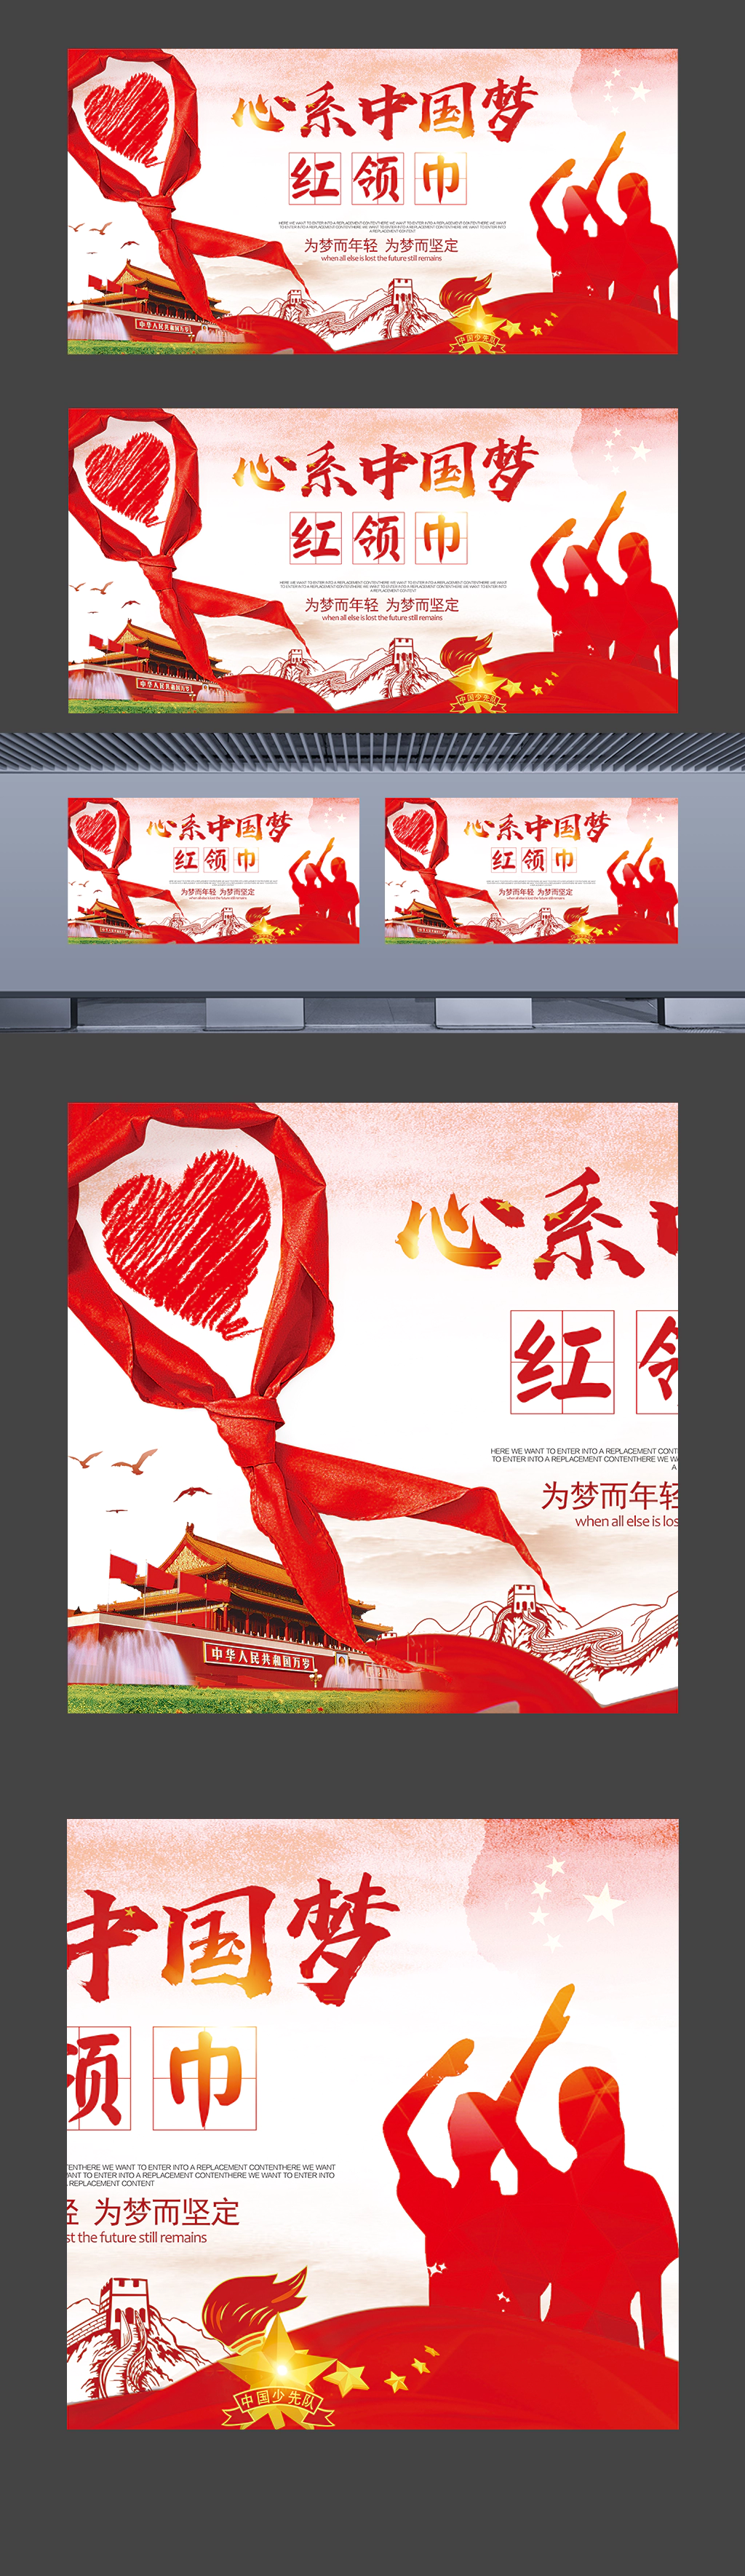 红领巾心系中国梦精美设计小学校园宣传海报展板